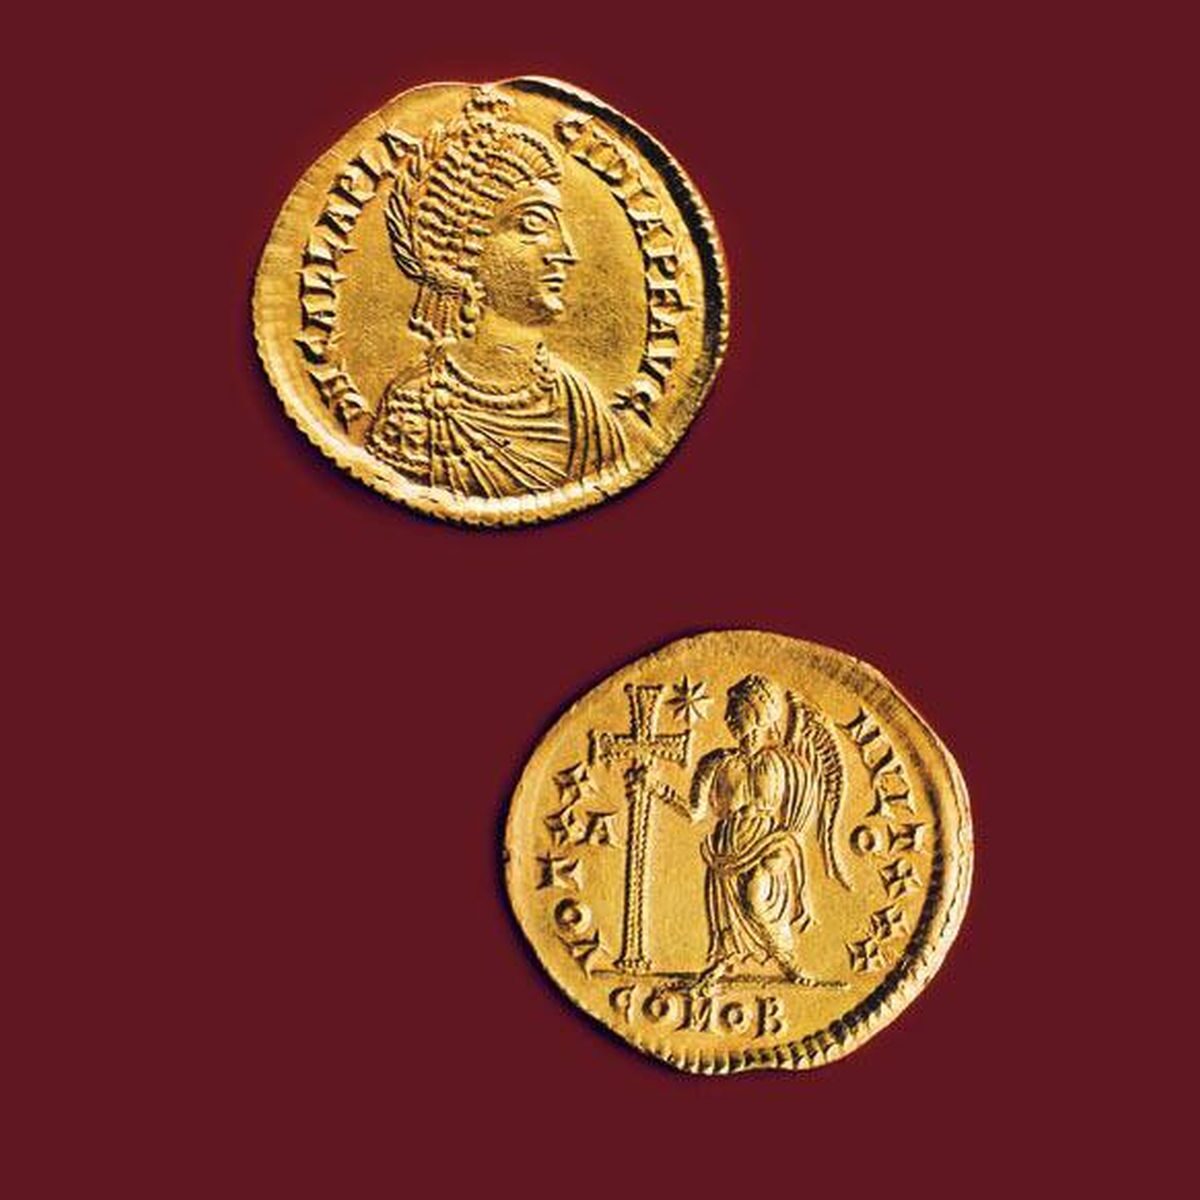 Moneta rzymska ukazująca Gallę Placydię